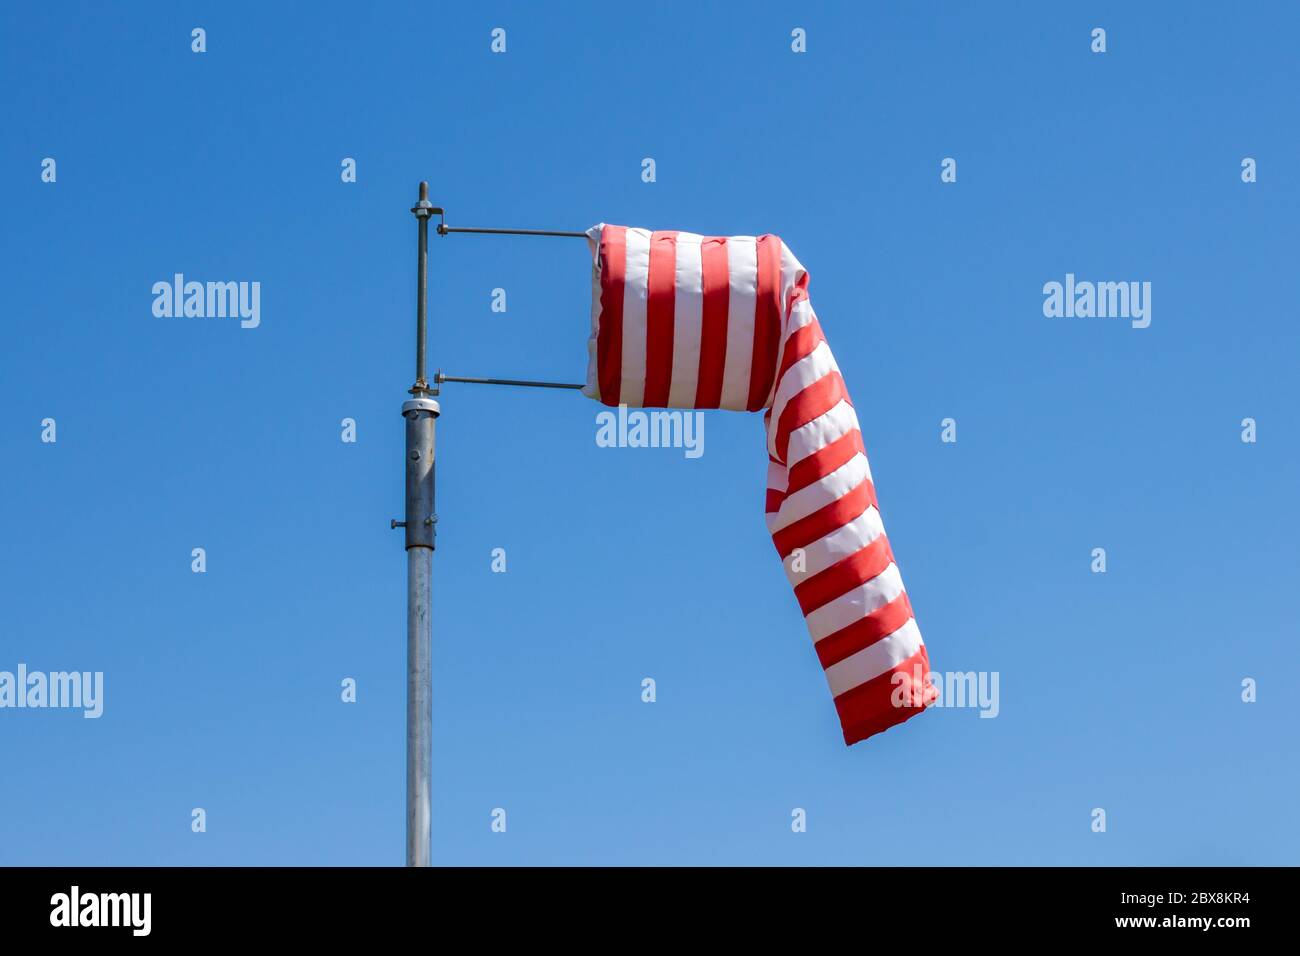 Drapeau de la protection contre le vent, sans vent, bandes rouges et blanches sur fond bleu Banque D'Images